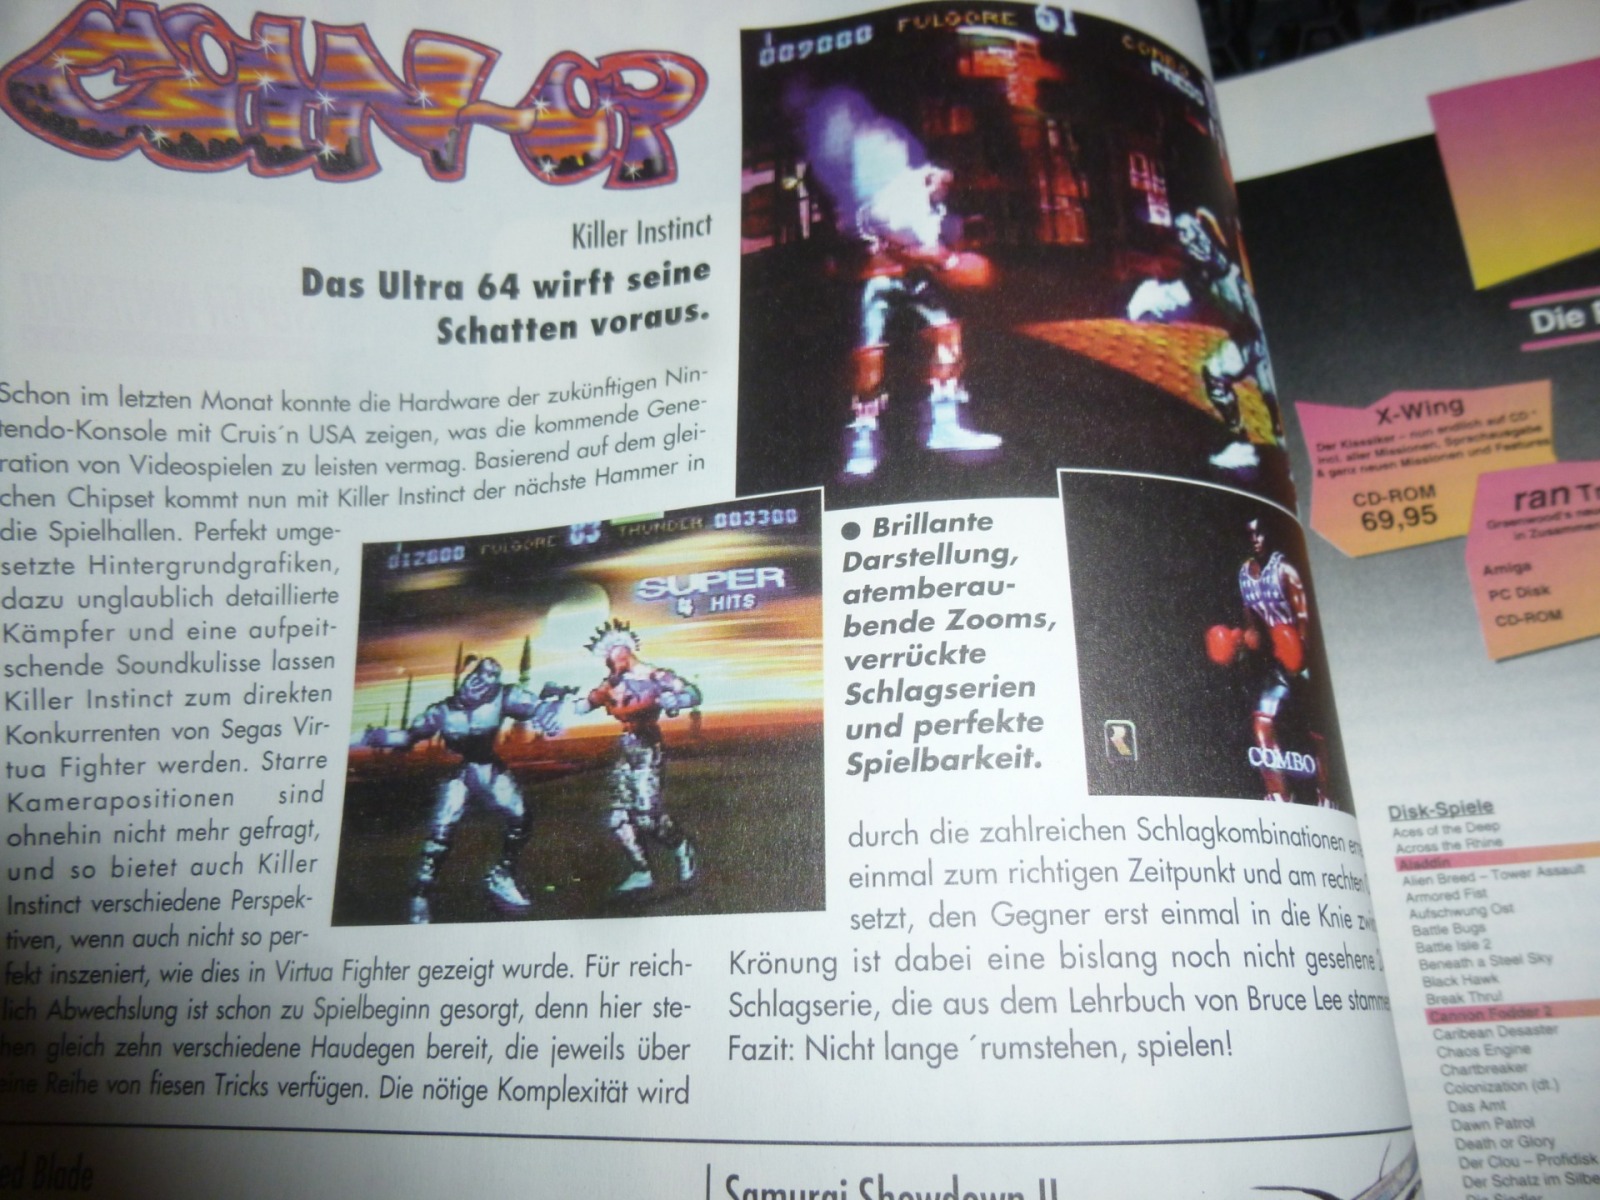 Play Time - Das Computer- und Videospiele-Magazin - Ausgabe 1/95 1995 6